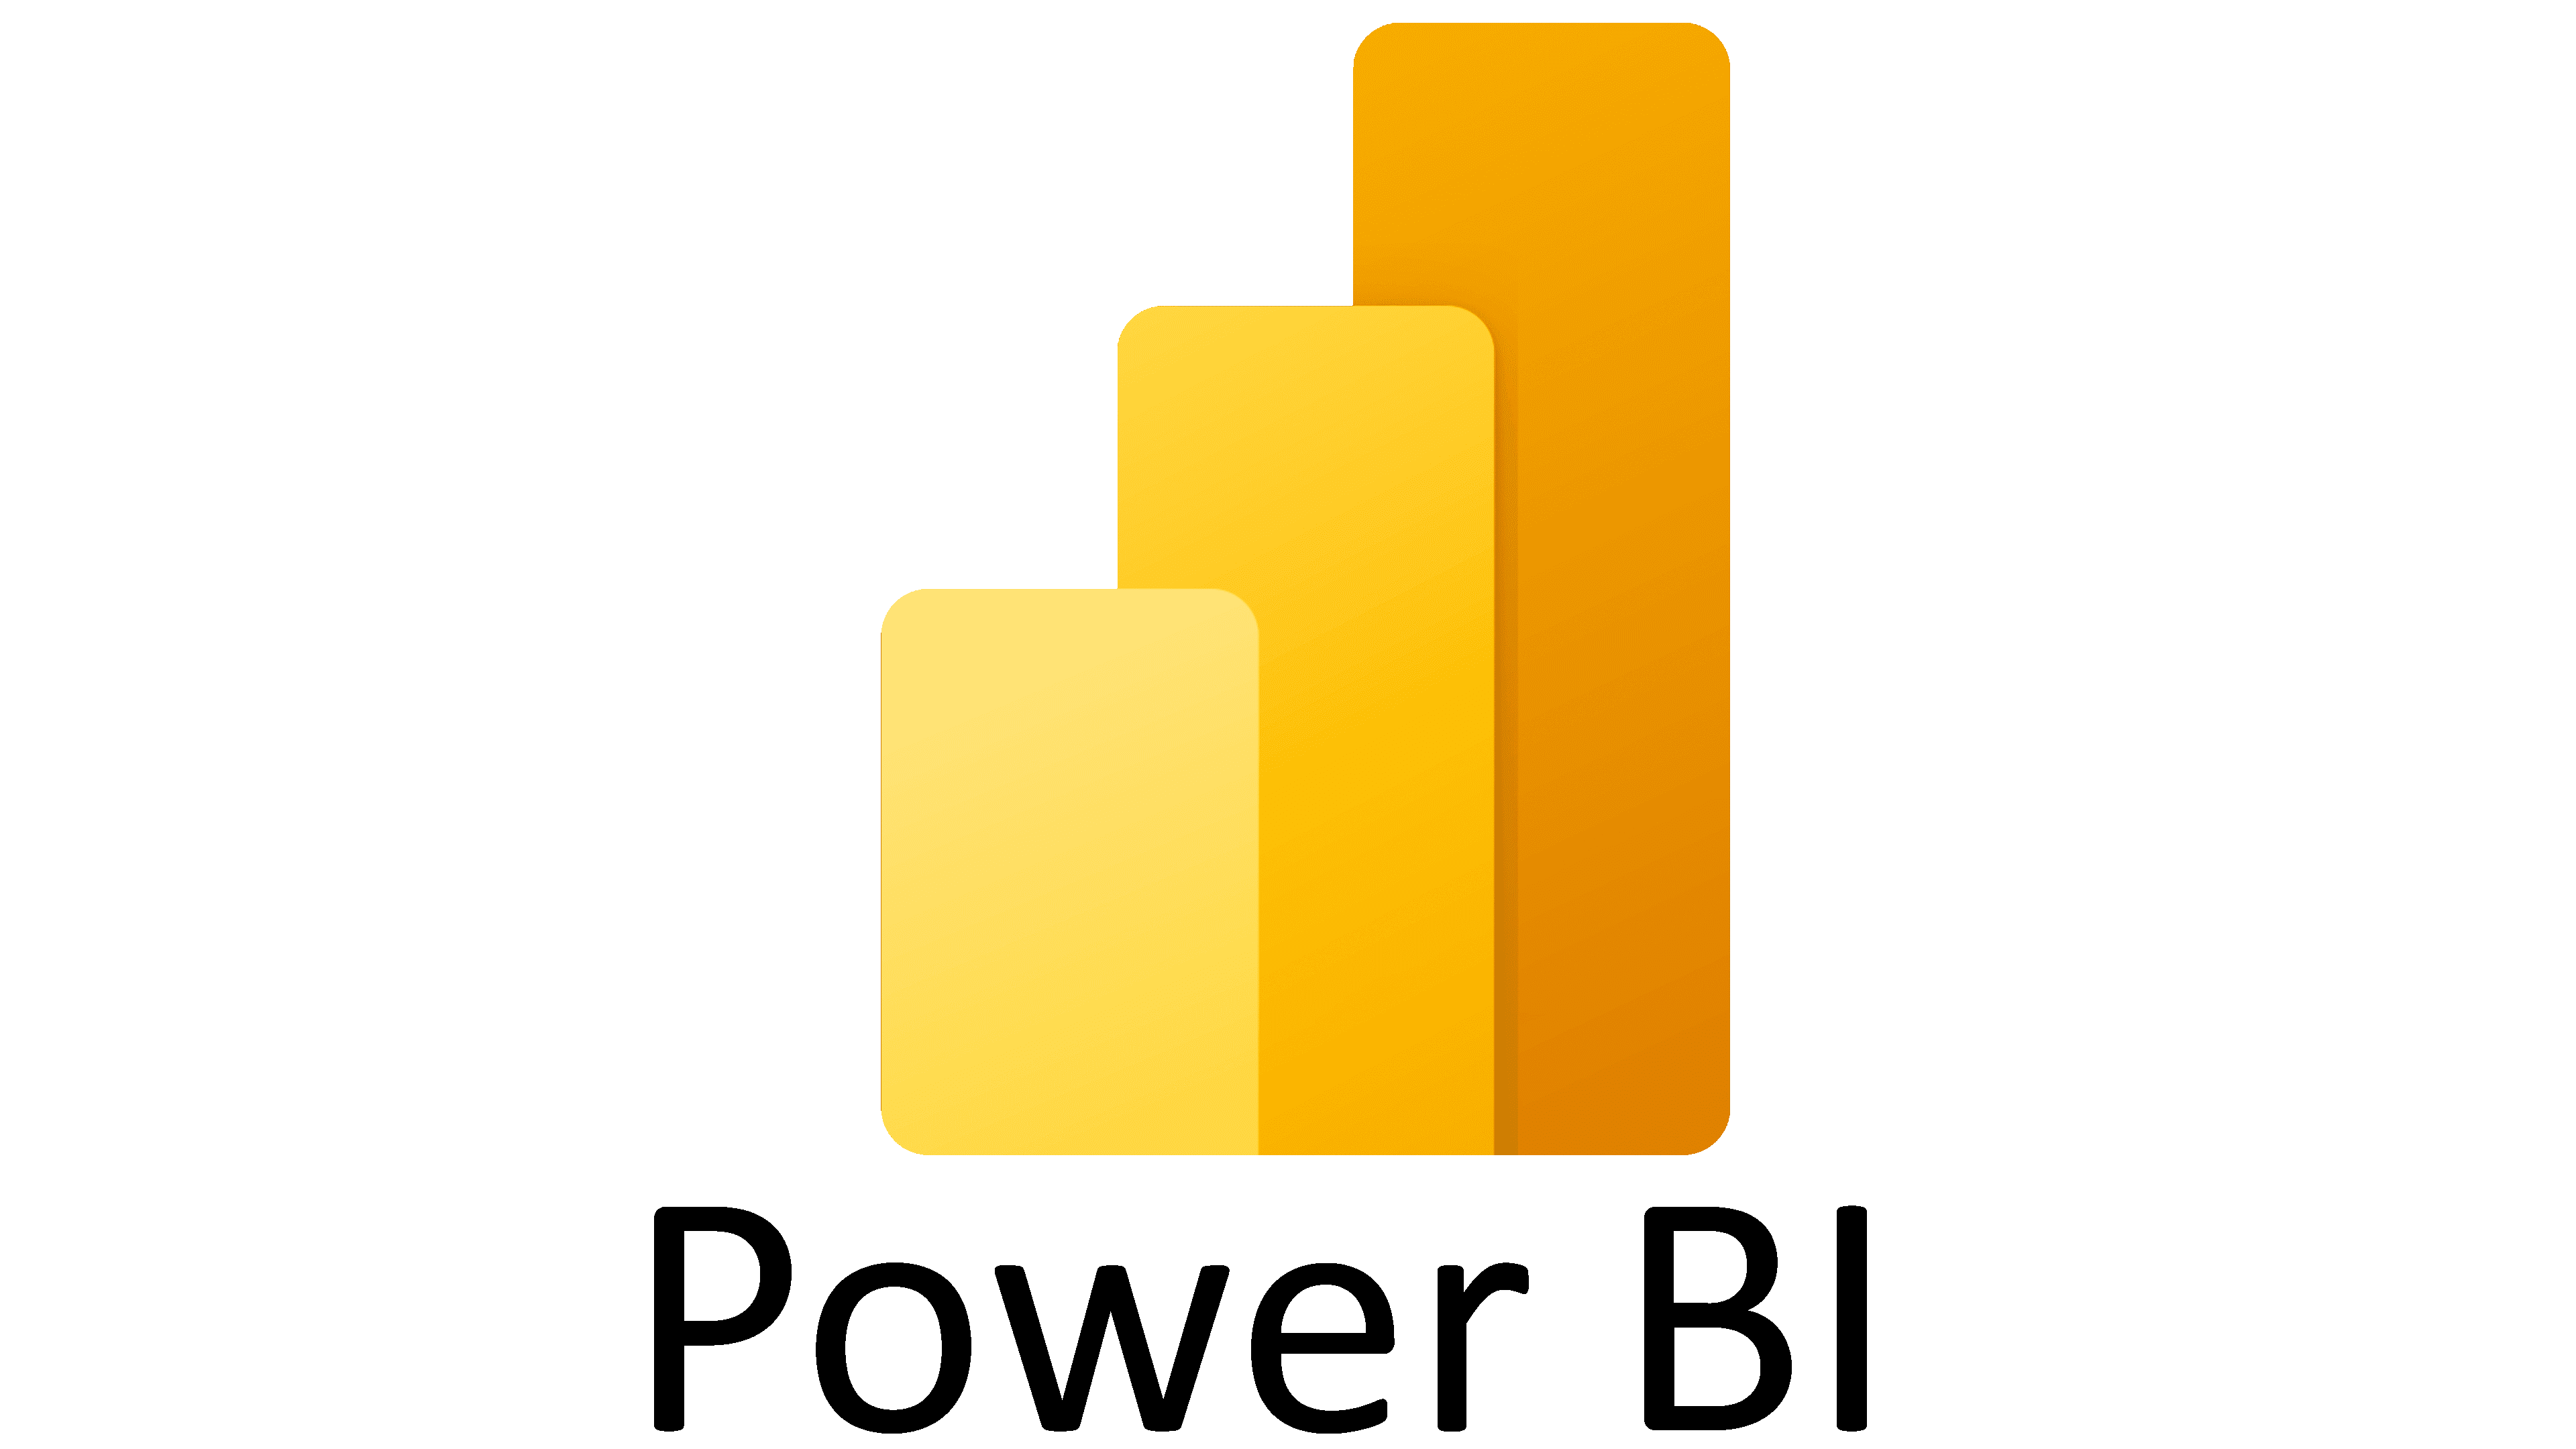 Bi вход. Значок Power bi. Power bi логотип без фона. Microsoft Power bi лого. Логотип Microsoft Power bi PNG.